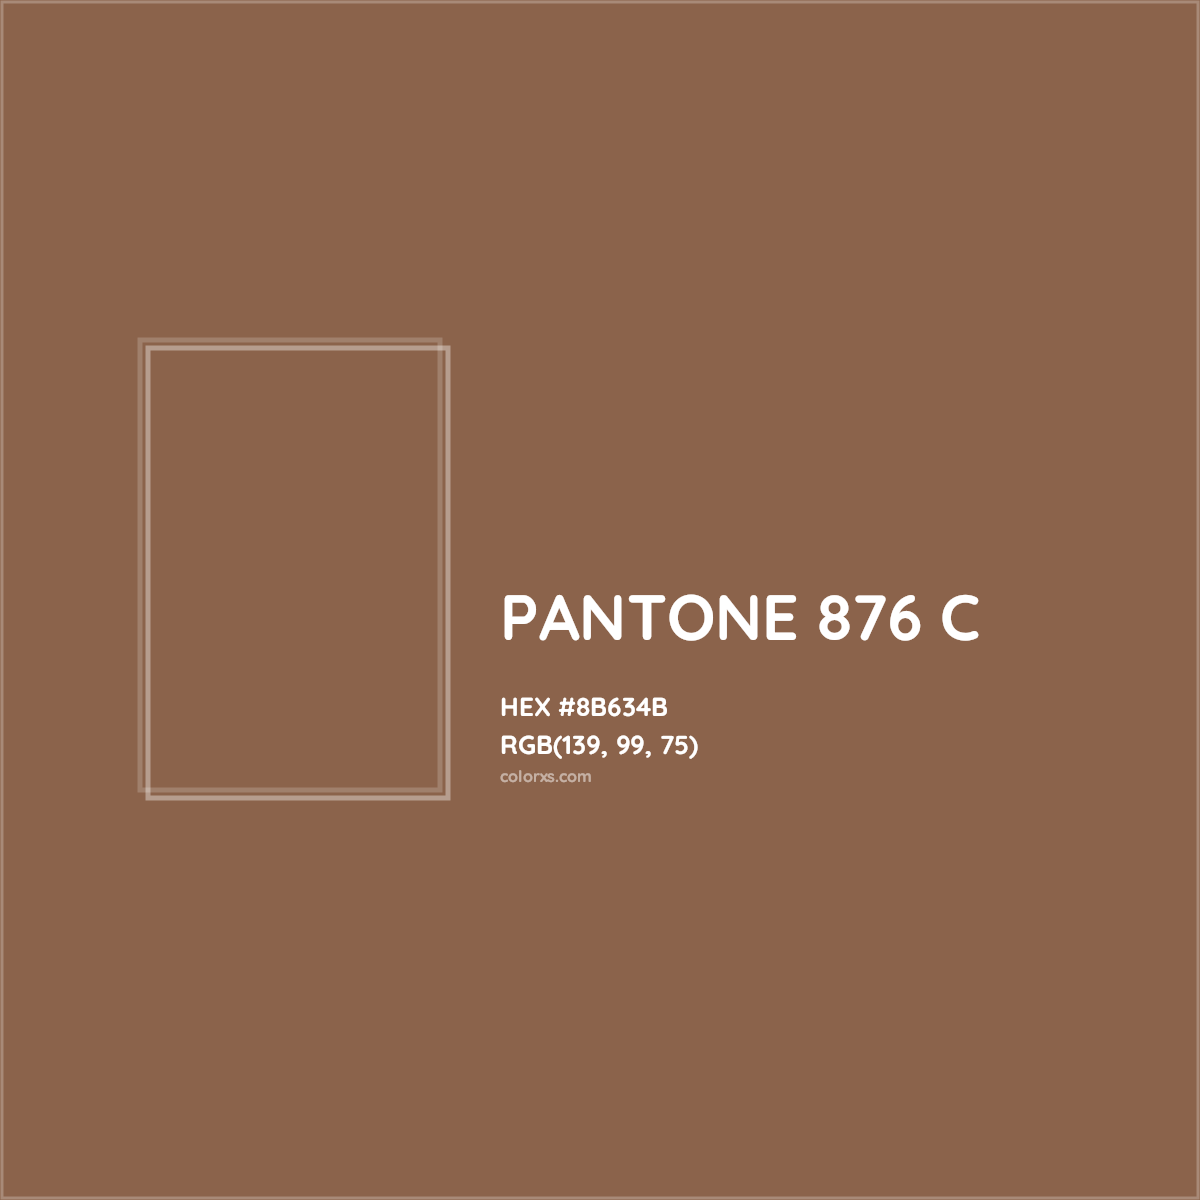 HEX #8B634B PANTONE 876 C CMS Pantone PMS - Color Code